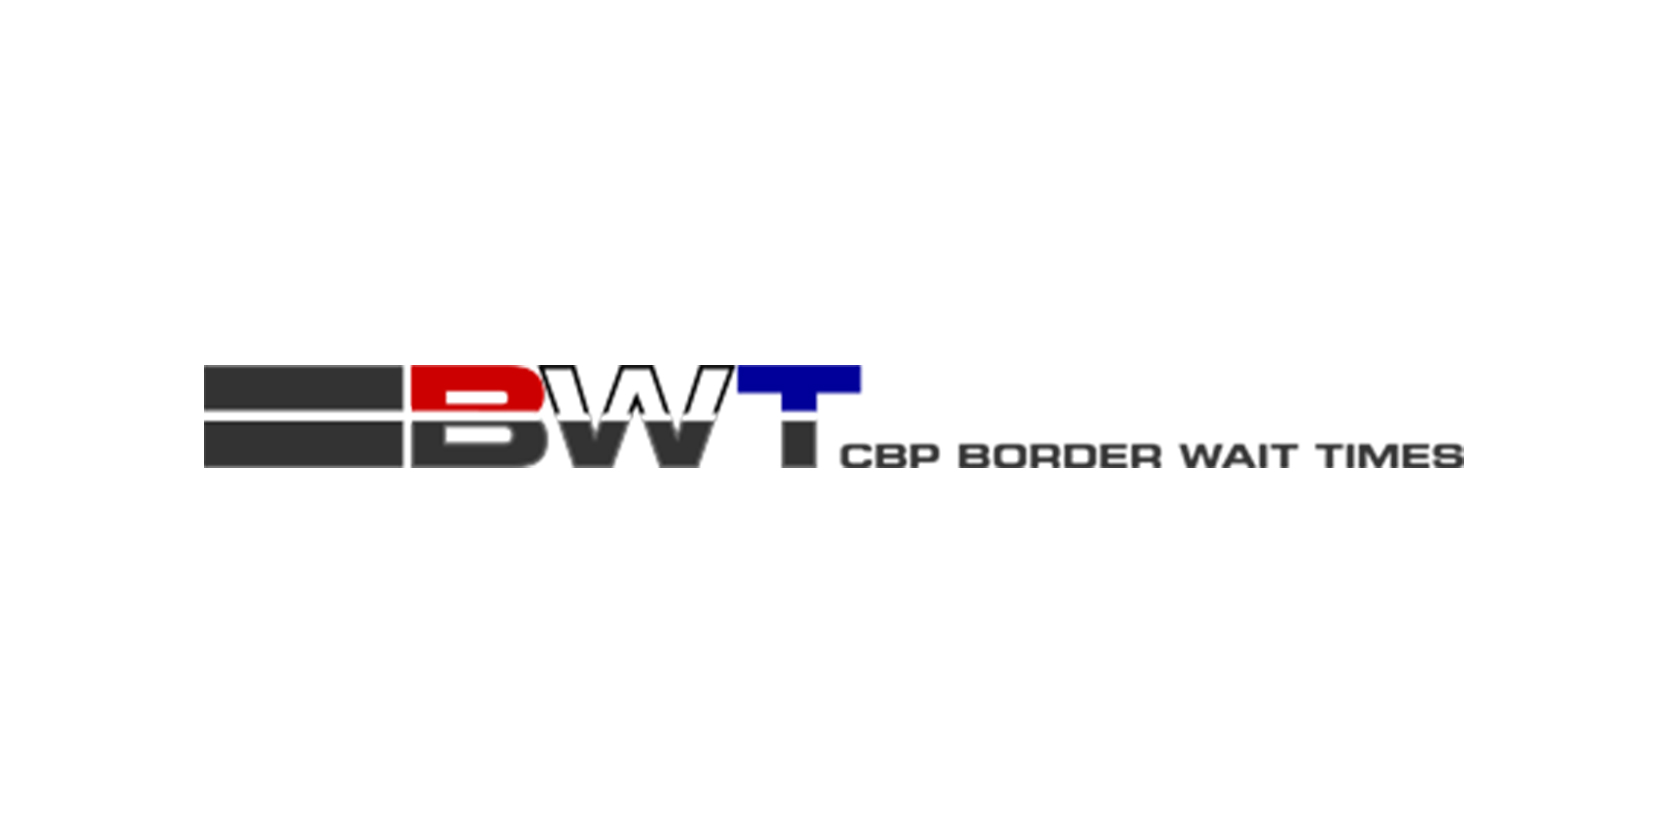 Logotipo de los tiempos de espera en la frontera